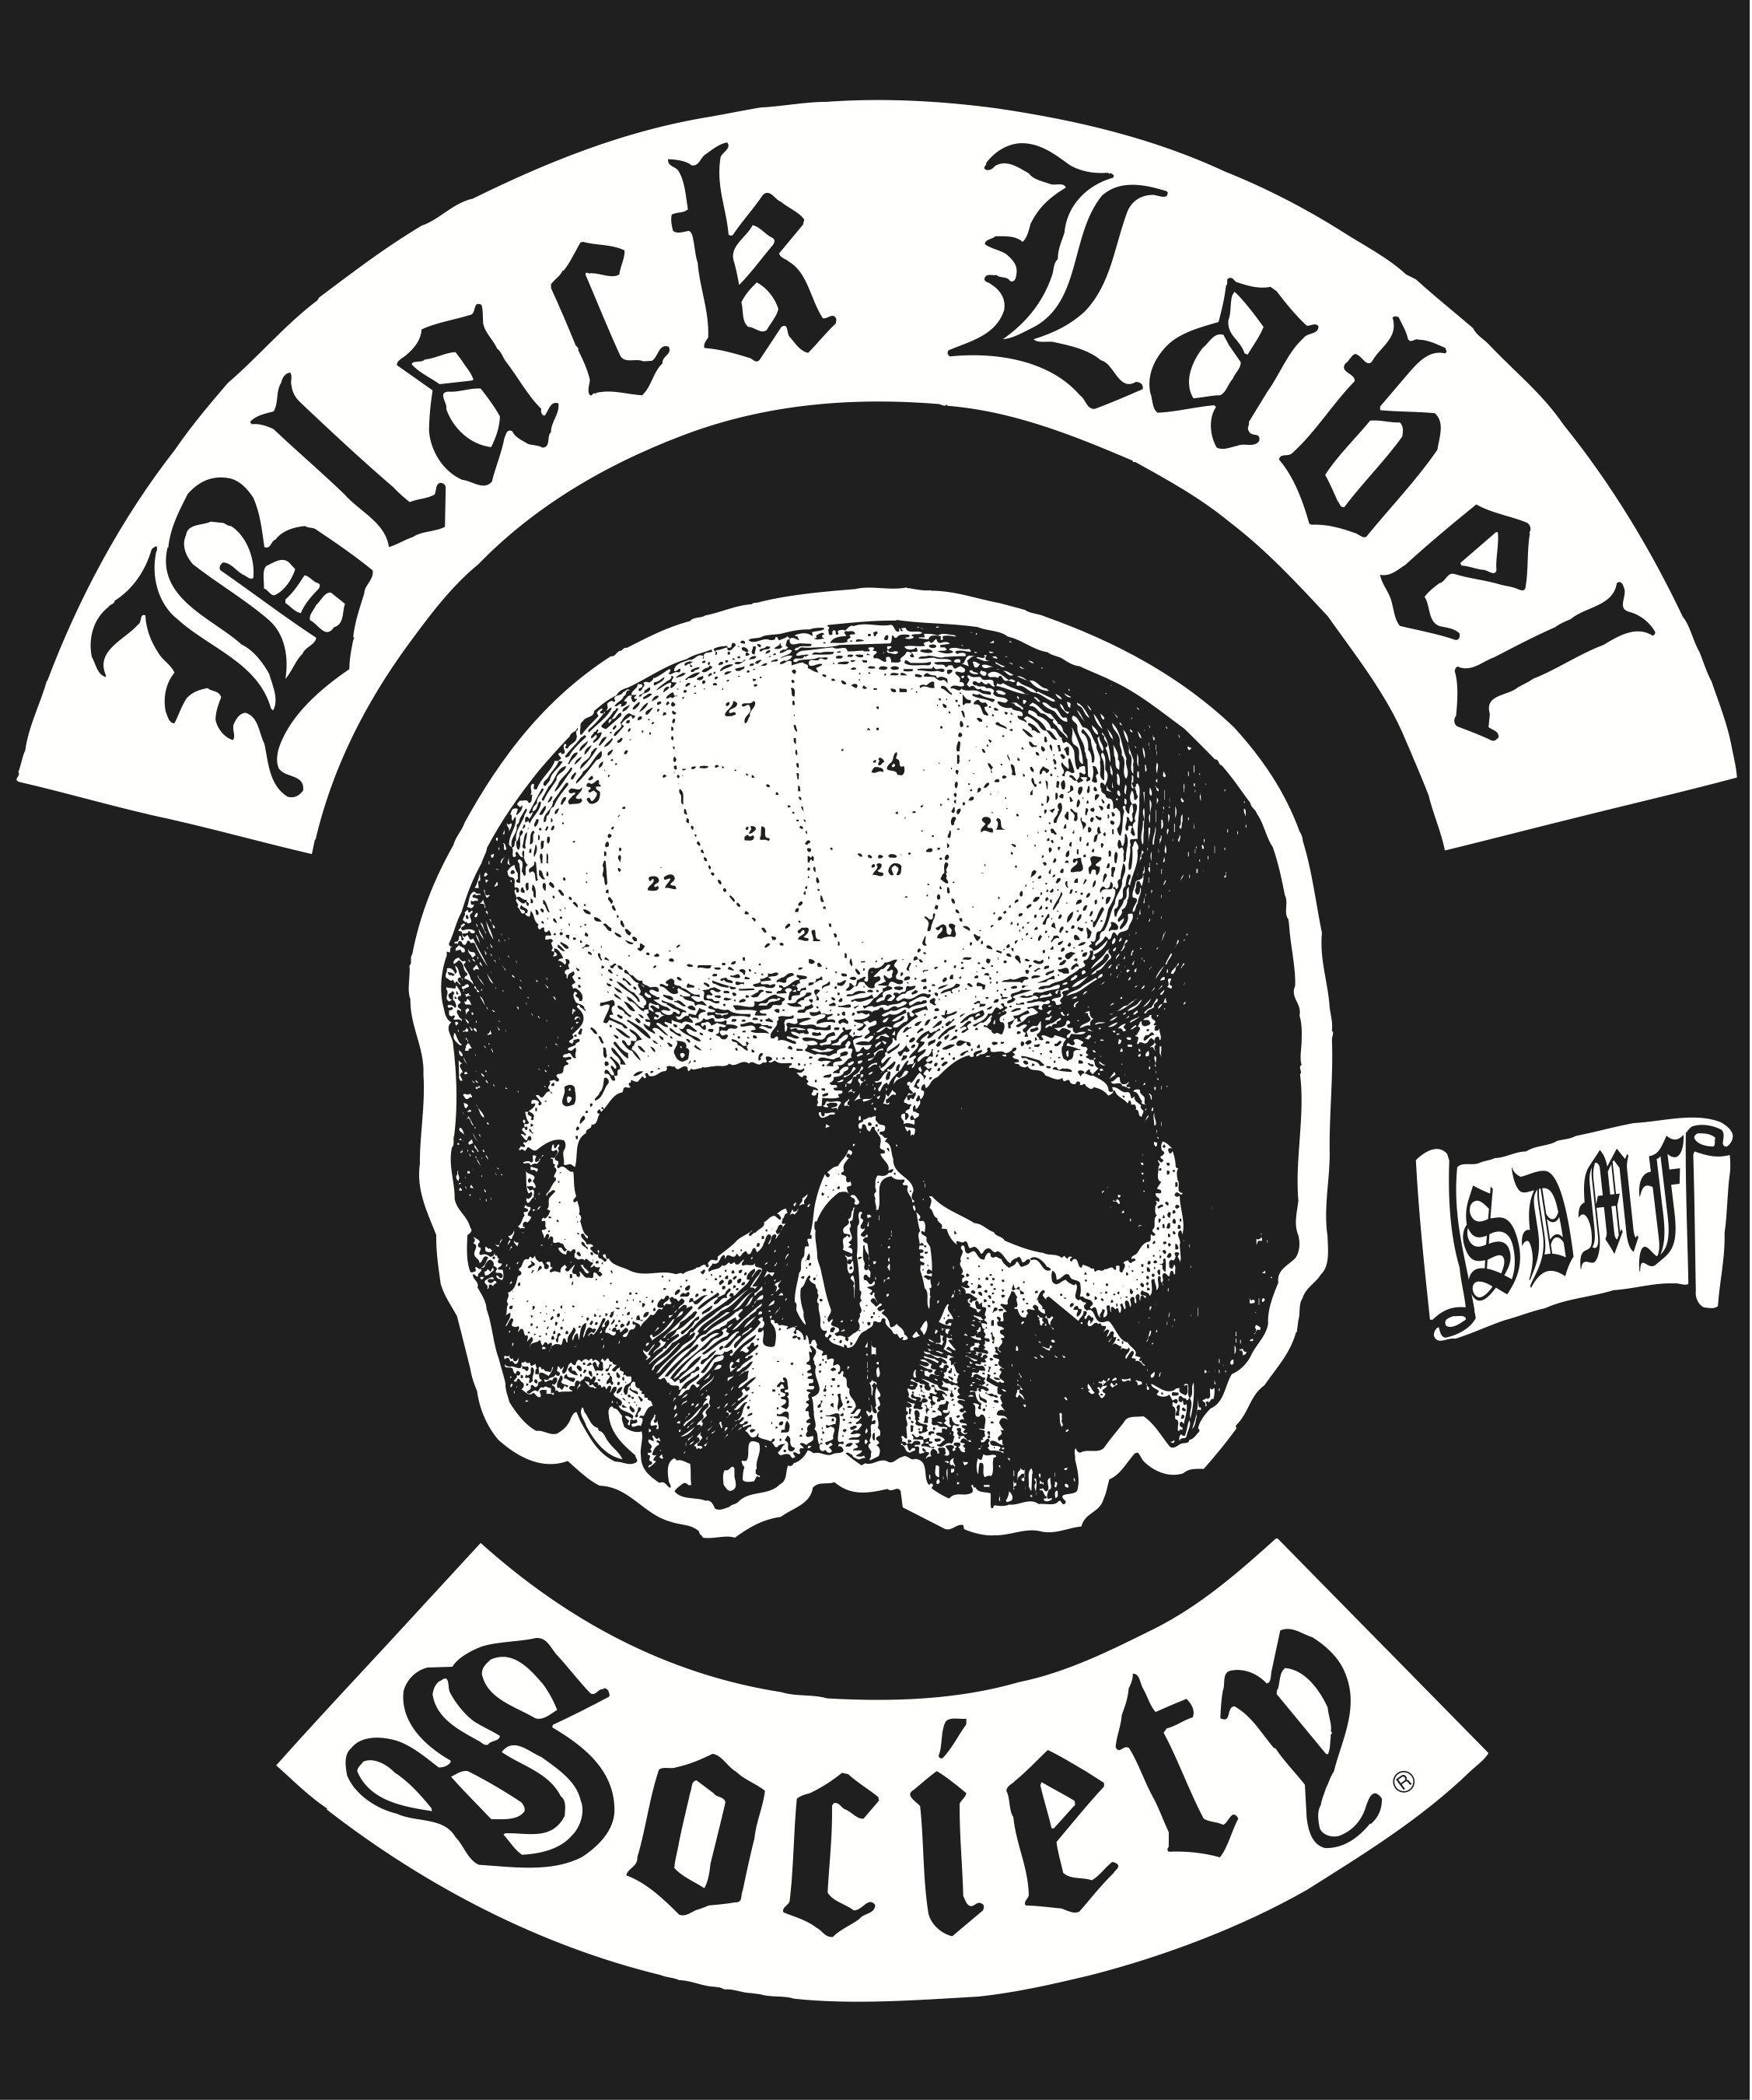 ZAKK WYLDE Black Label Society Zakk Wylde Ozzy guitar heavy metal wallpaper   5760x3840  917708  WallpaperUP